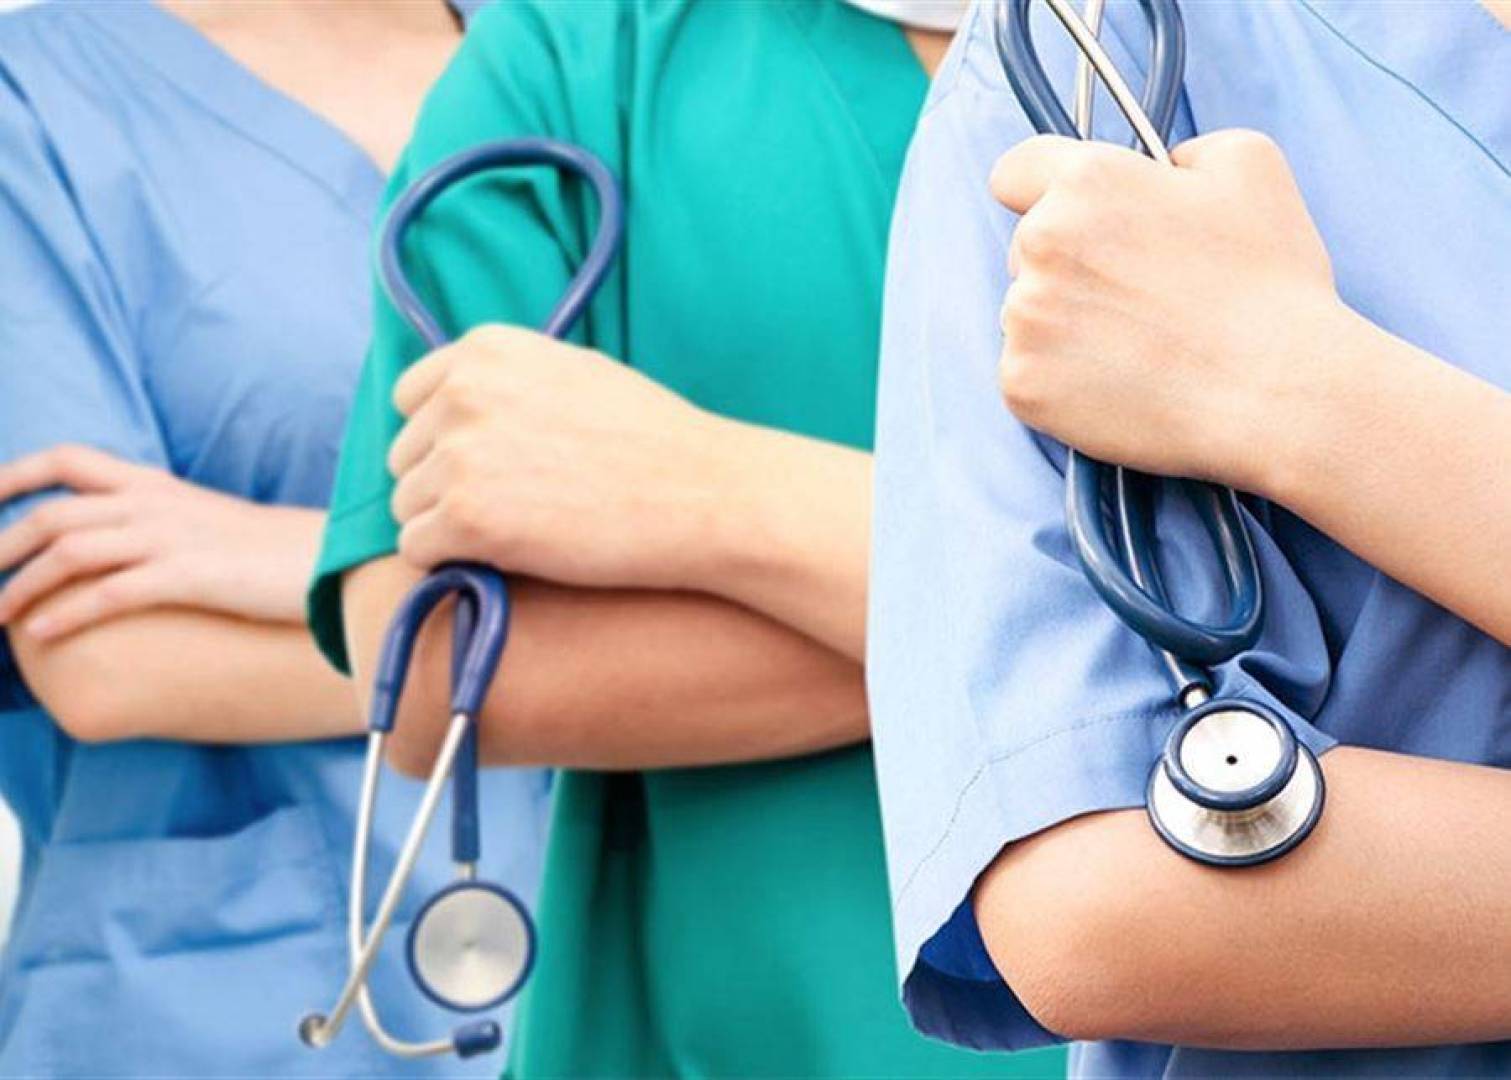 شكاوى من نقص الممرضين في المستشفيات الحكومية والخاصة في المملكة 